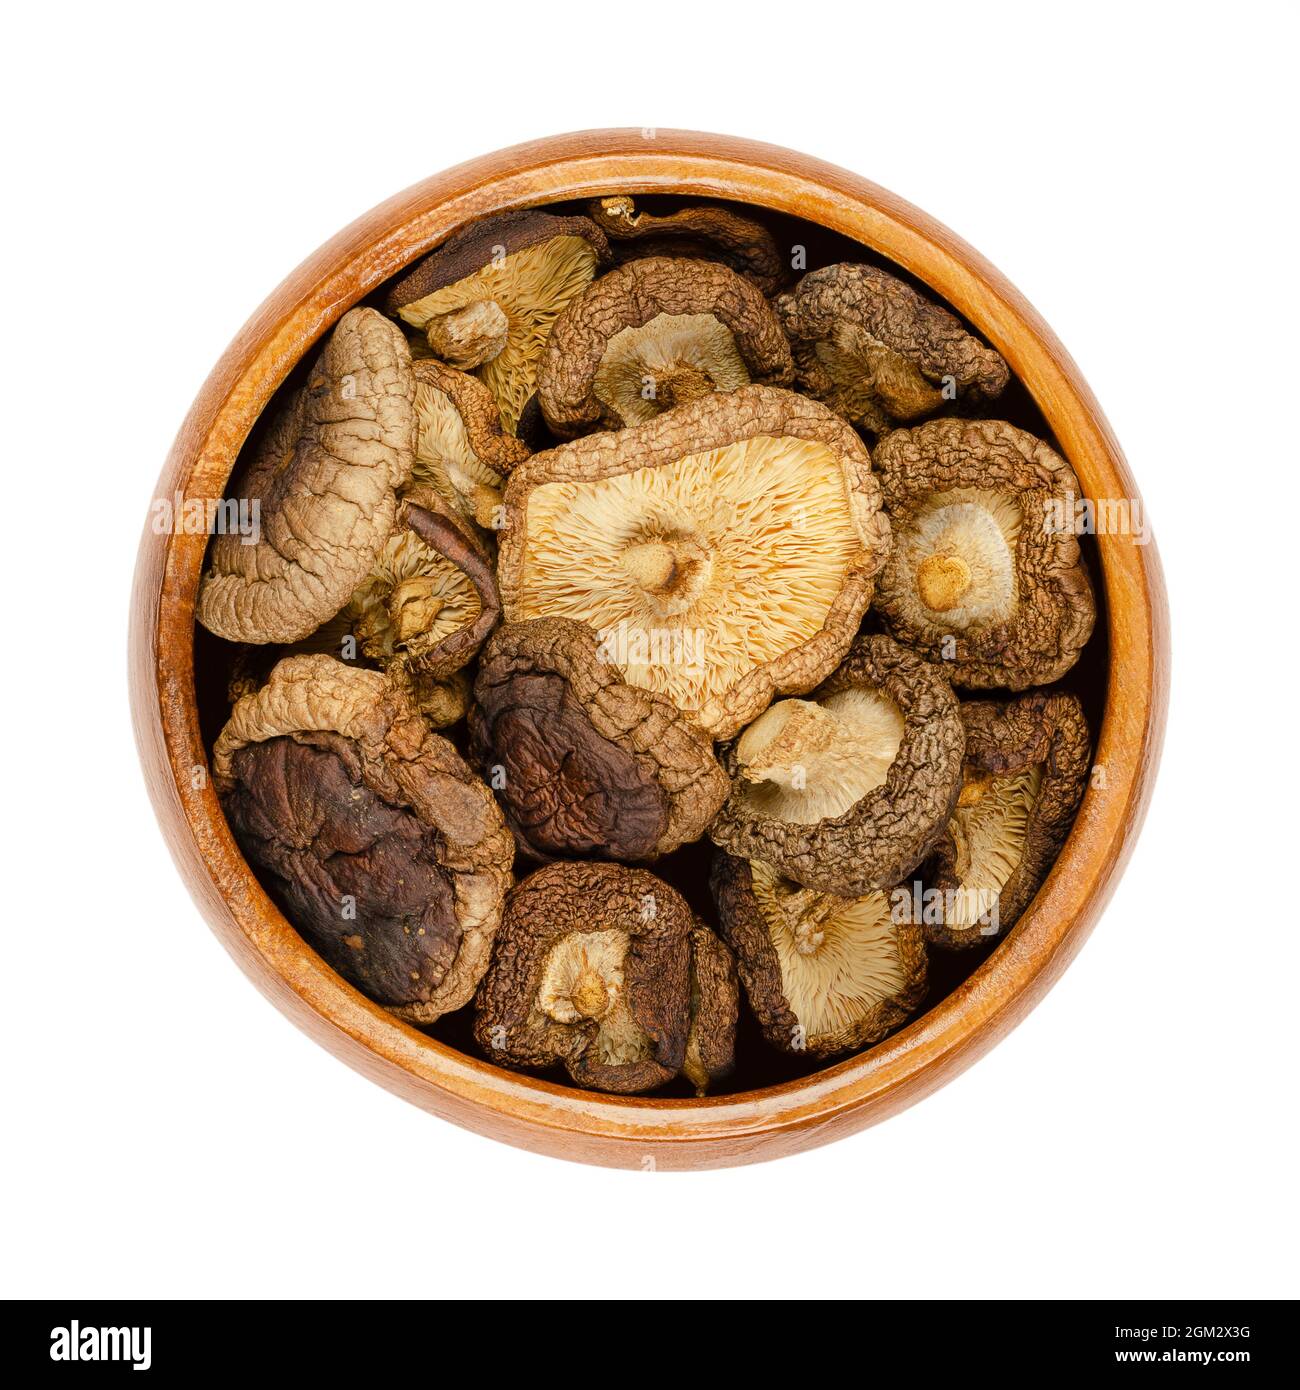 Funghi shiitake secchi, in una ciotola di legno. Lentinula edodes, funghi commestibili, nativi dell'Asia orientale, anche usato nella medicina tradizionale. Foto Stock